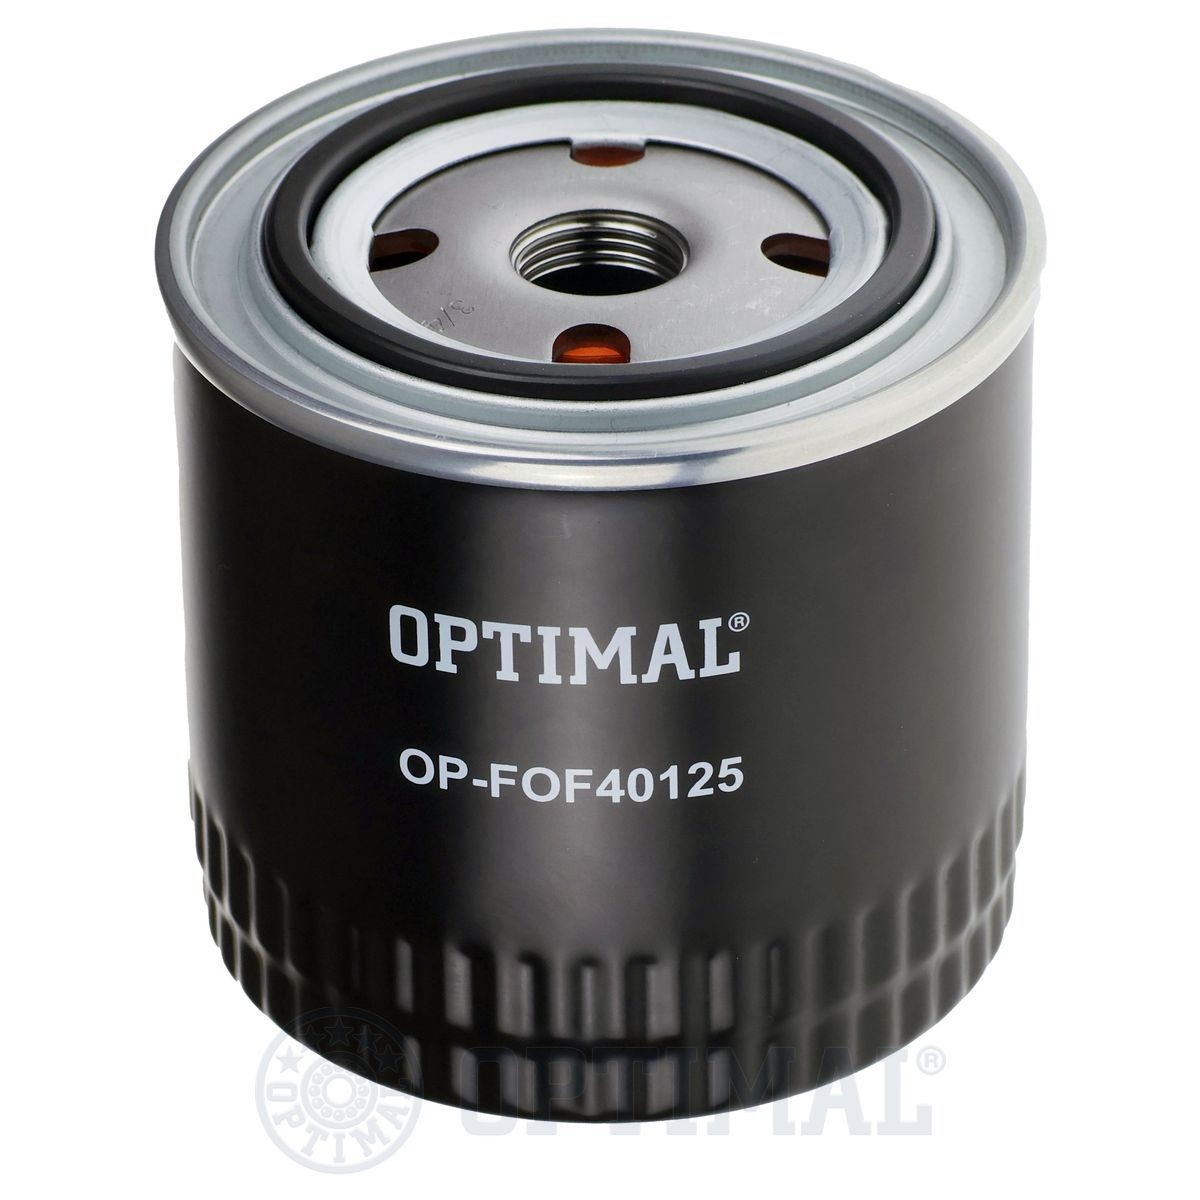 Achat de OP-FOF40125 OPTIMAL 3/4-16 UNF-1B, avec un clapet de non retour, Filtre vissé Diamètre intérieur 2: 72, 63mm, Ø: 96, 93mm, Hauteur: 96mm Filtre à huile OP-FOF40125 bon marché